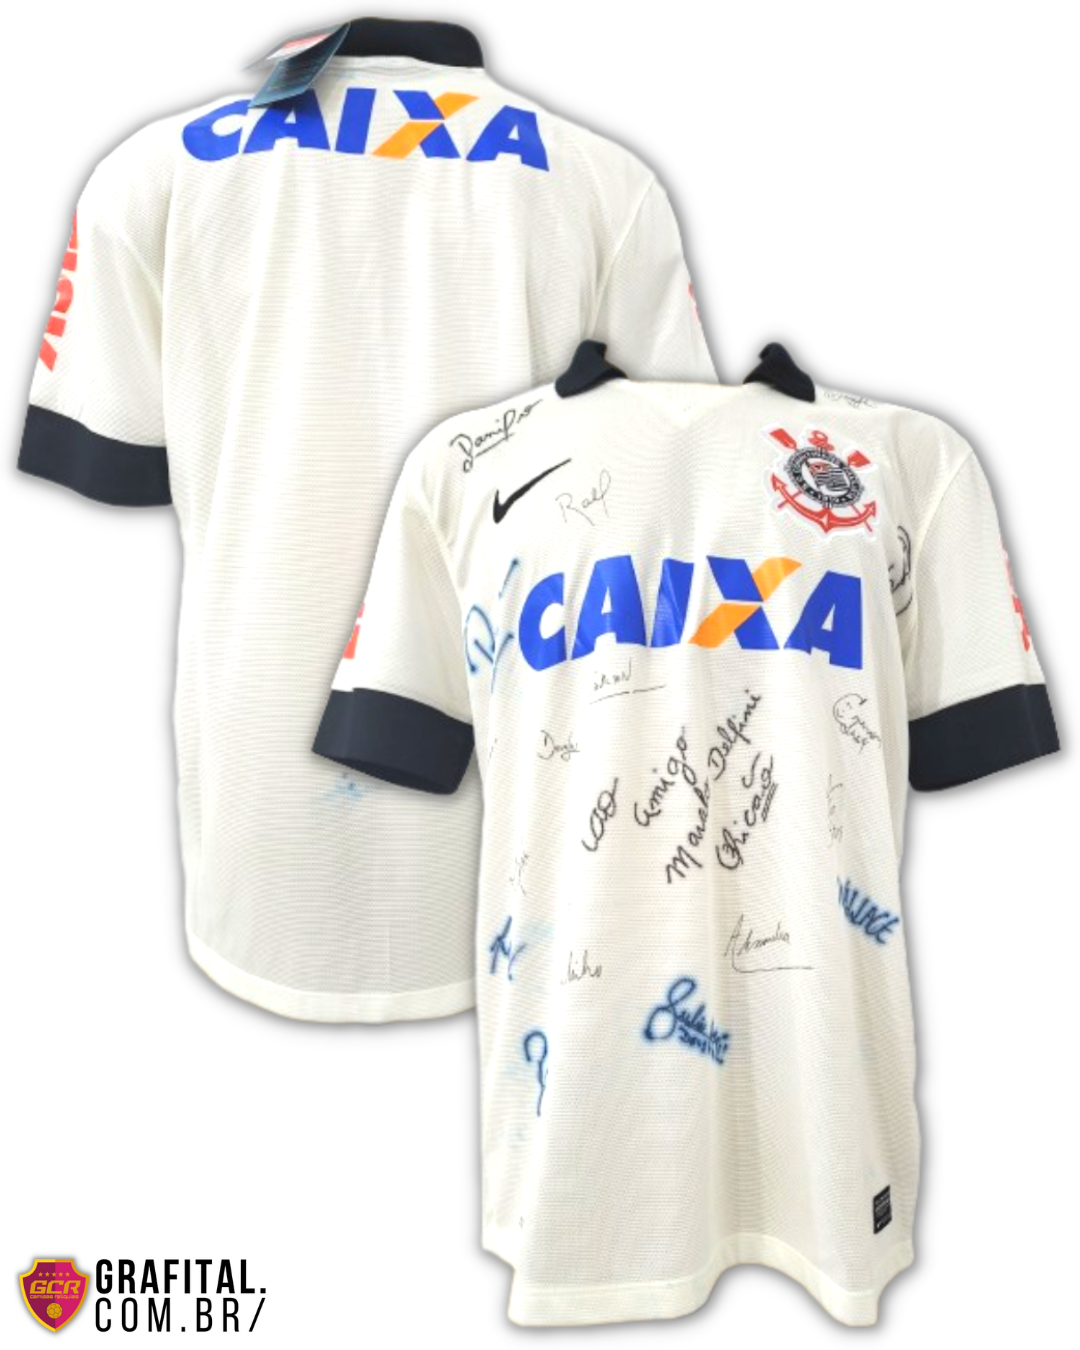 Corinthians 2013 Tamanho G 77x56cm - Grafital Camisas Relíquias